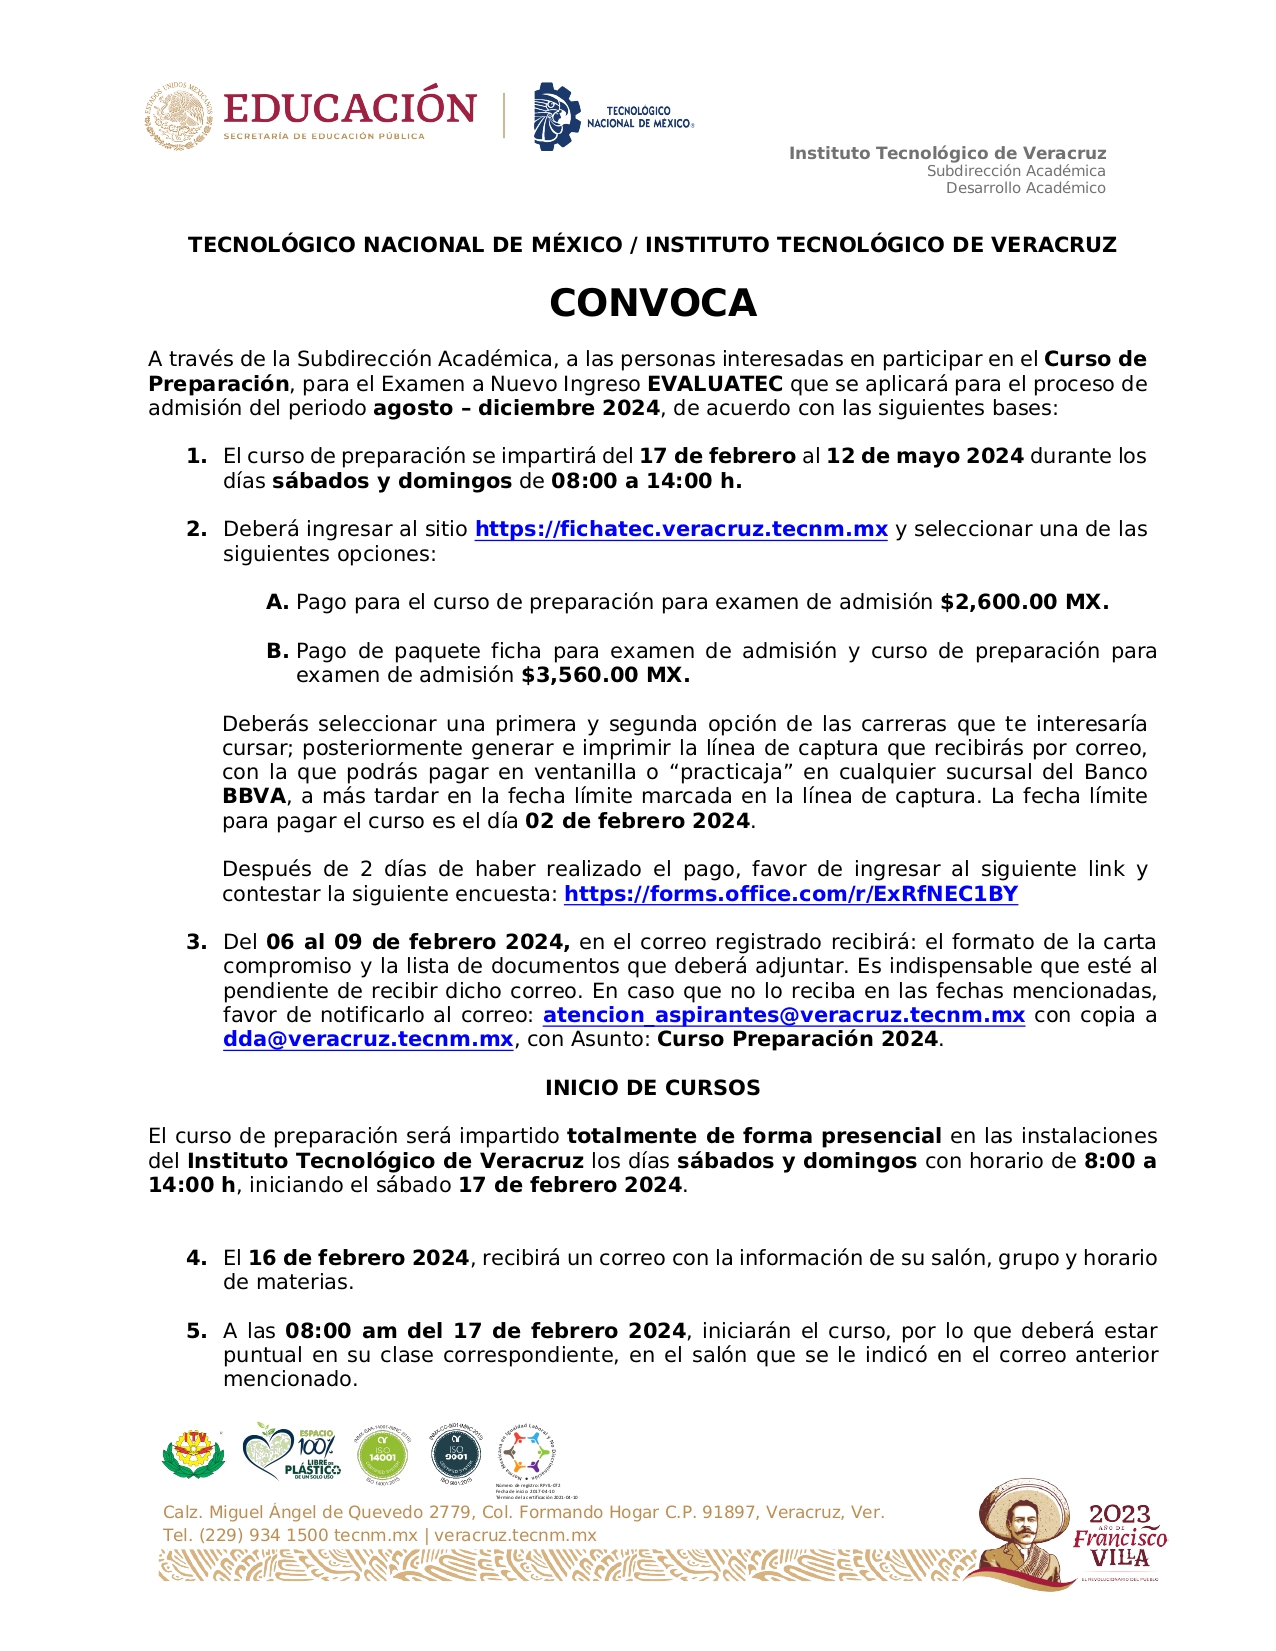 02_Convocatoria_Curso_de_Preparación_para_Examen_de_Admisión__page-0001.jpg